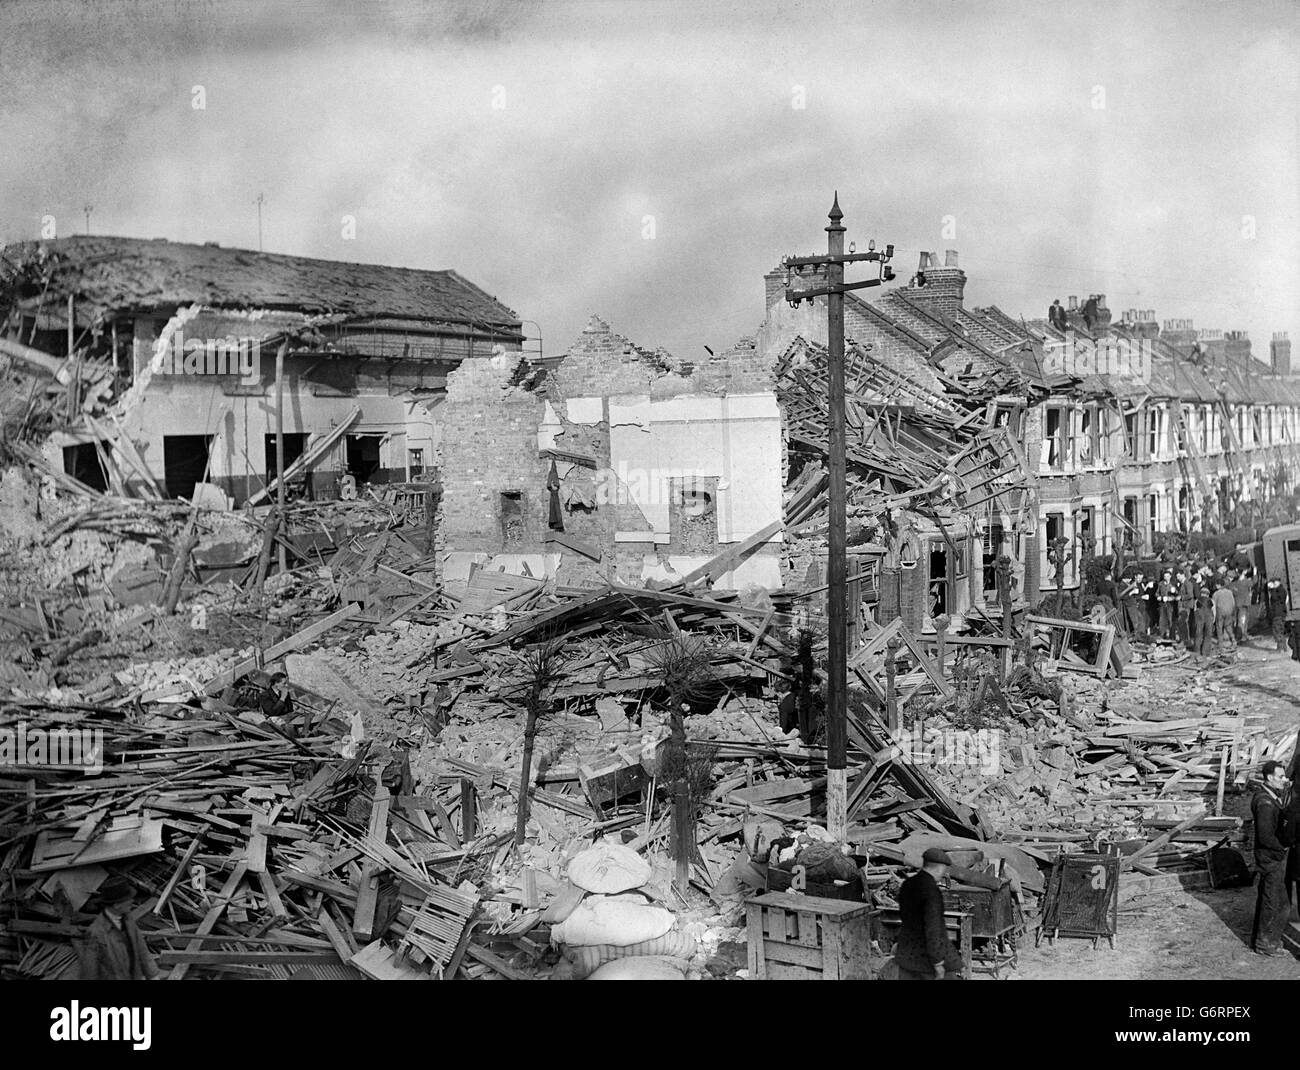 La Seconde Guerre mondiale - Le Blitz - raids de bombardement allemand détruit des foyers - Londres - 1940 Banque D'Images